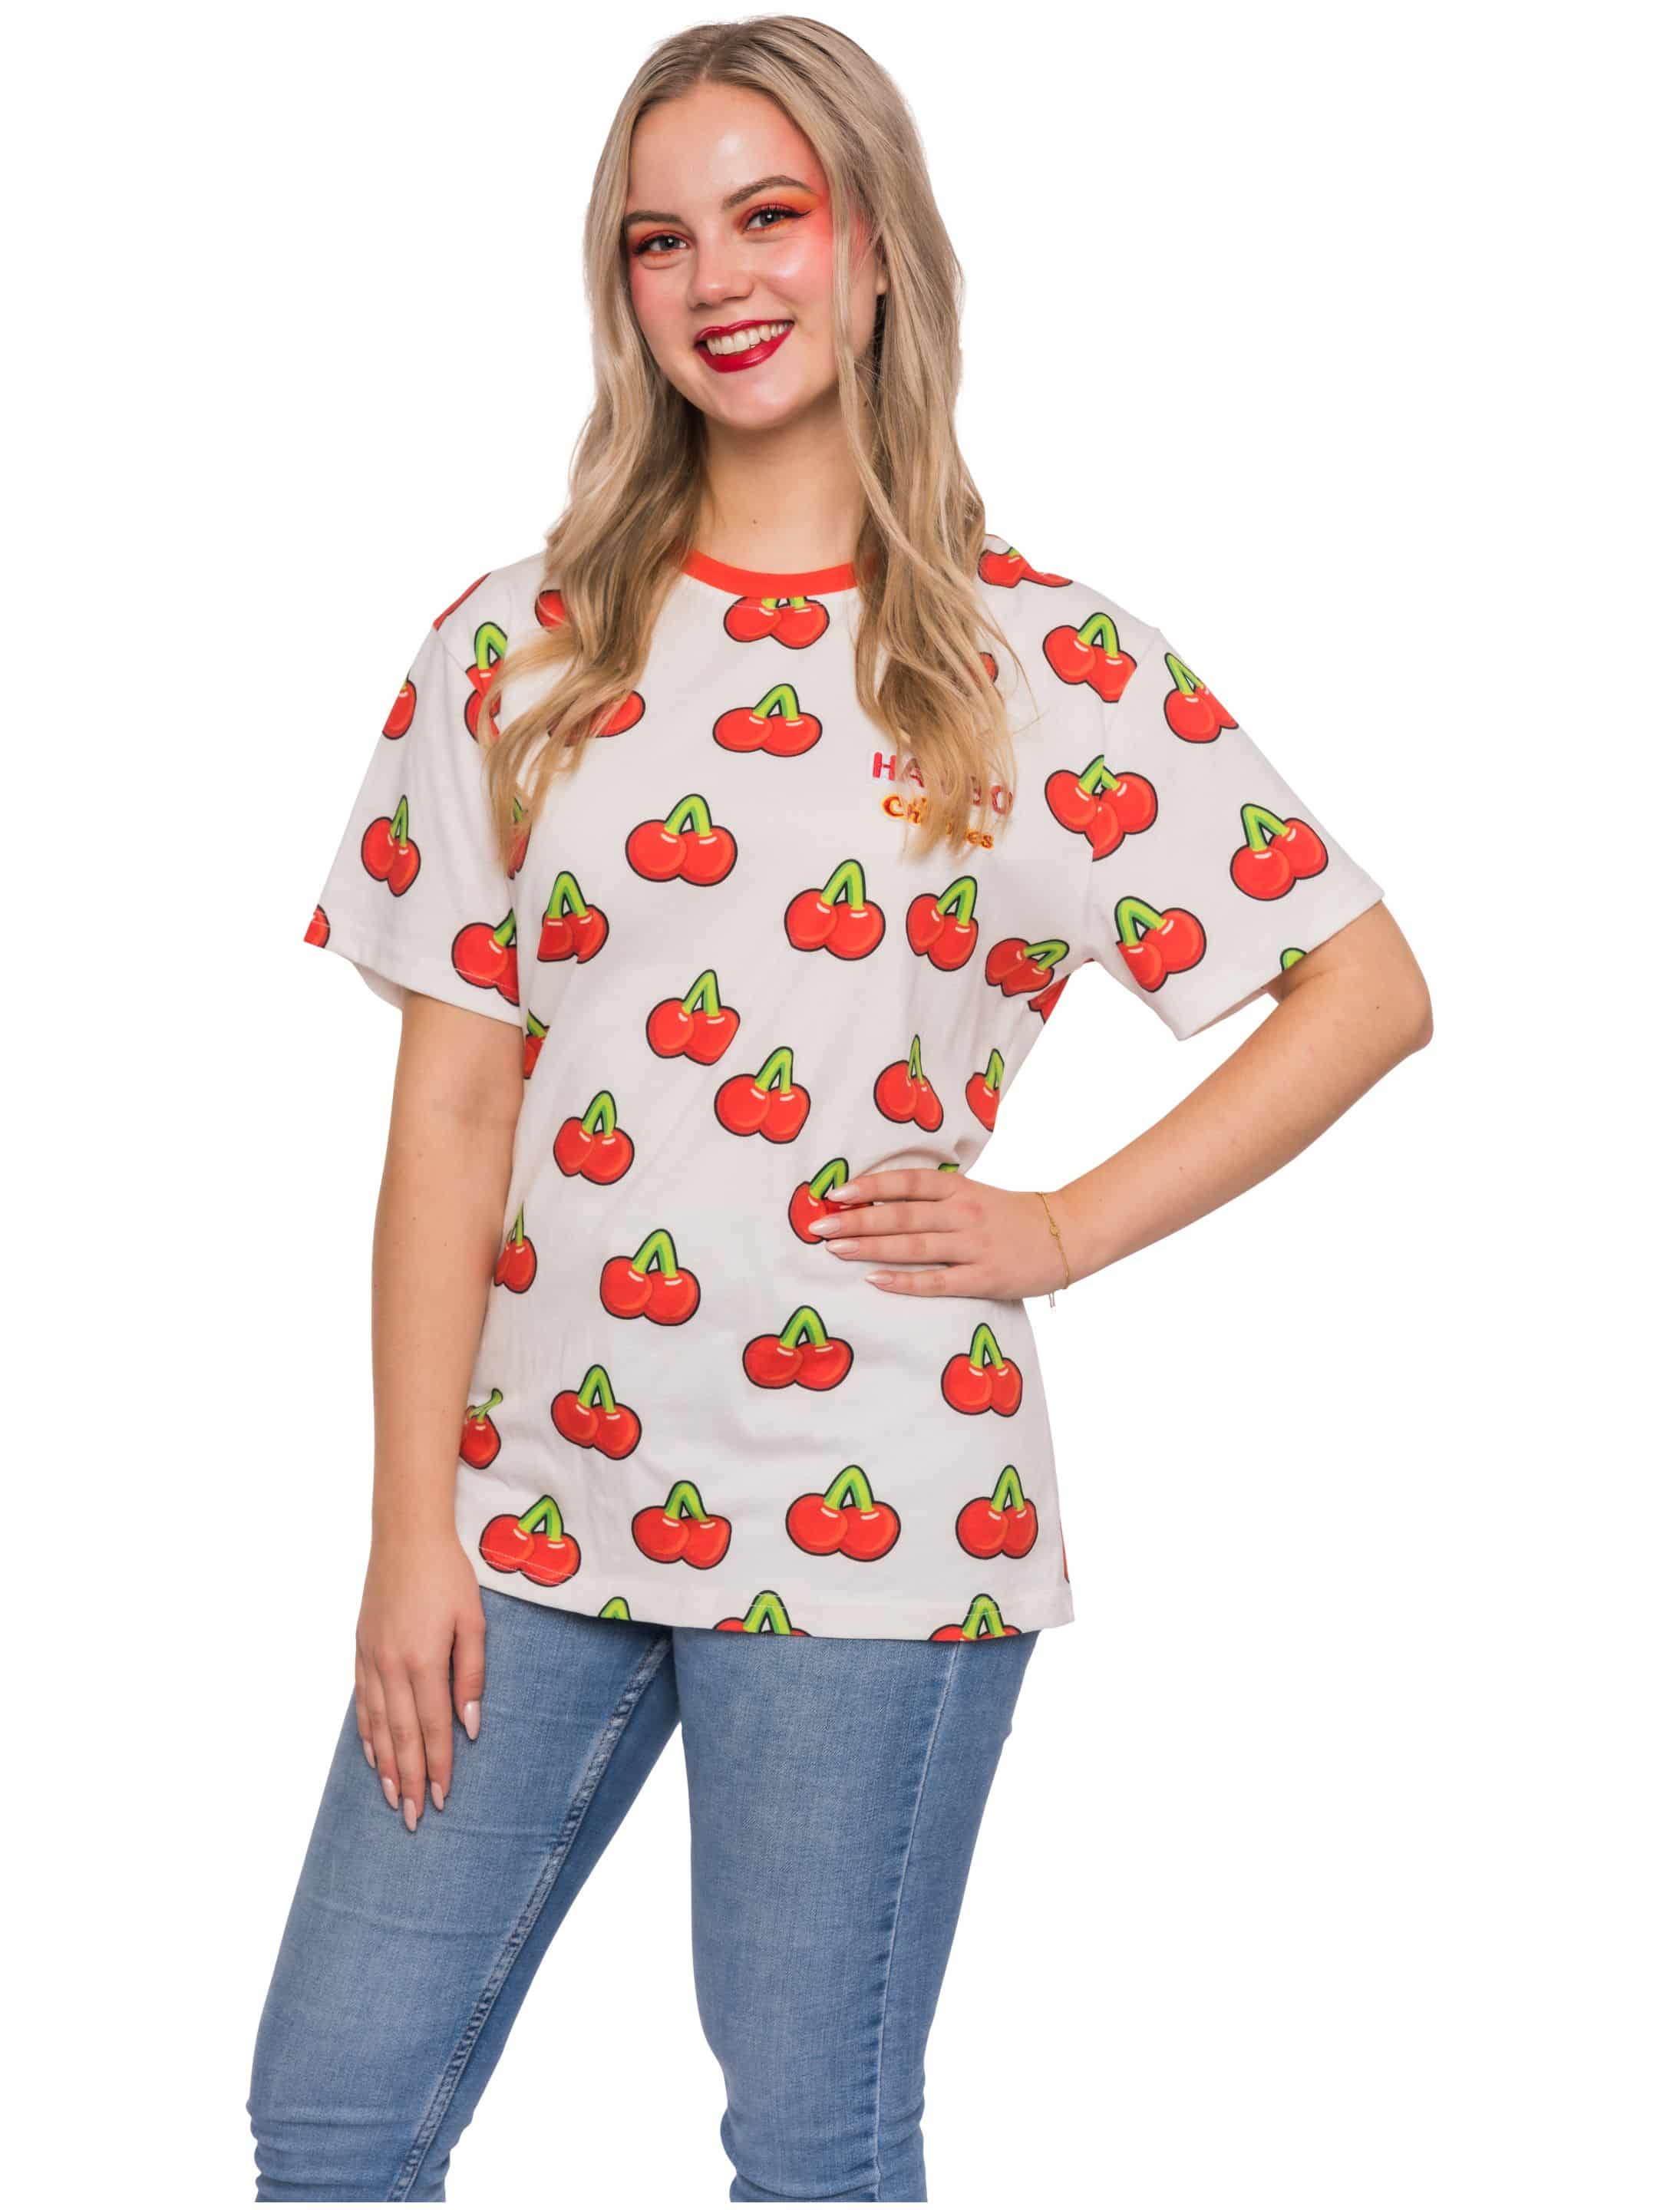 T-Shirt HARIBO Happy Cherries Unisex weiß/rot 2XL